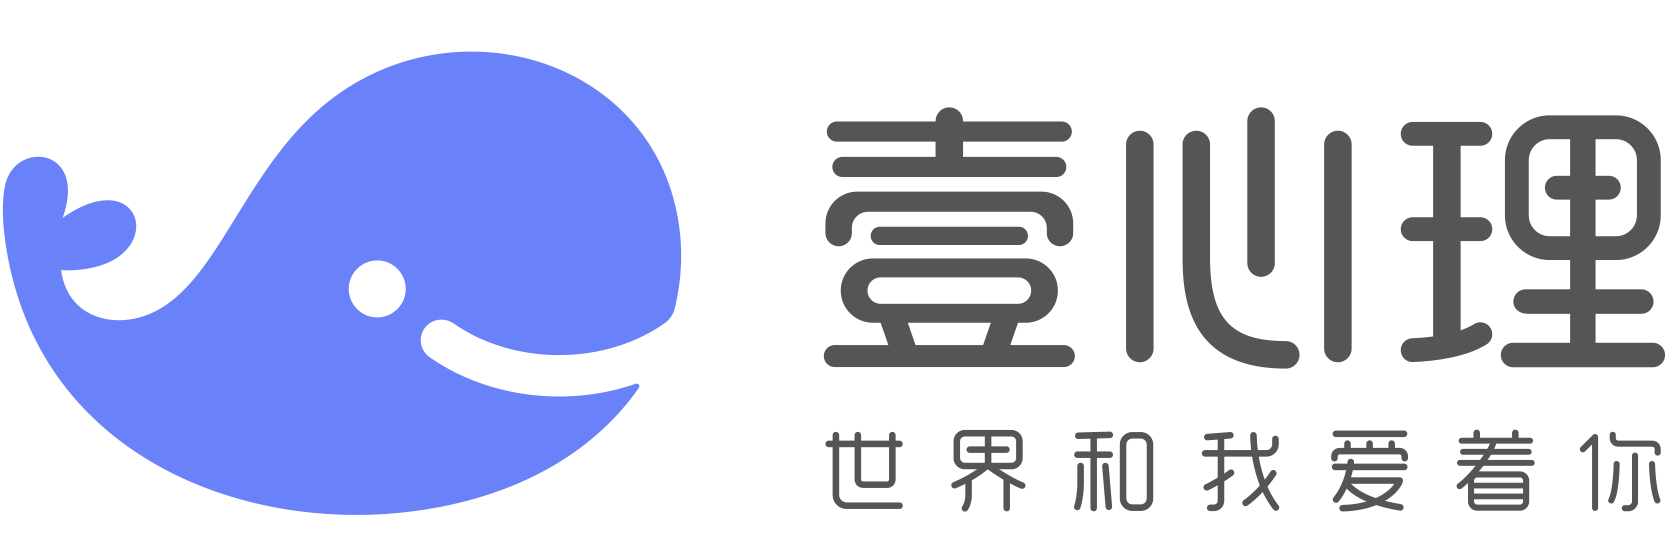 壹心理新logo